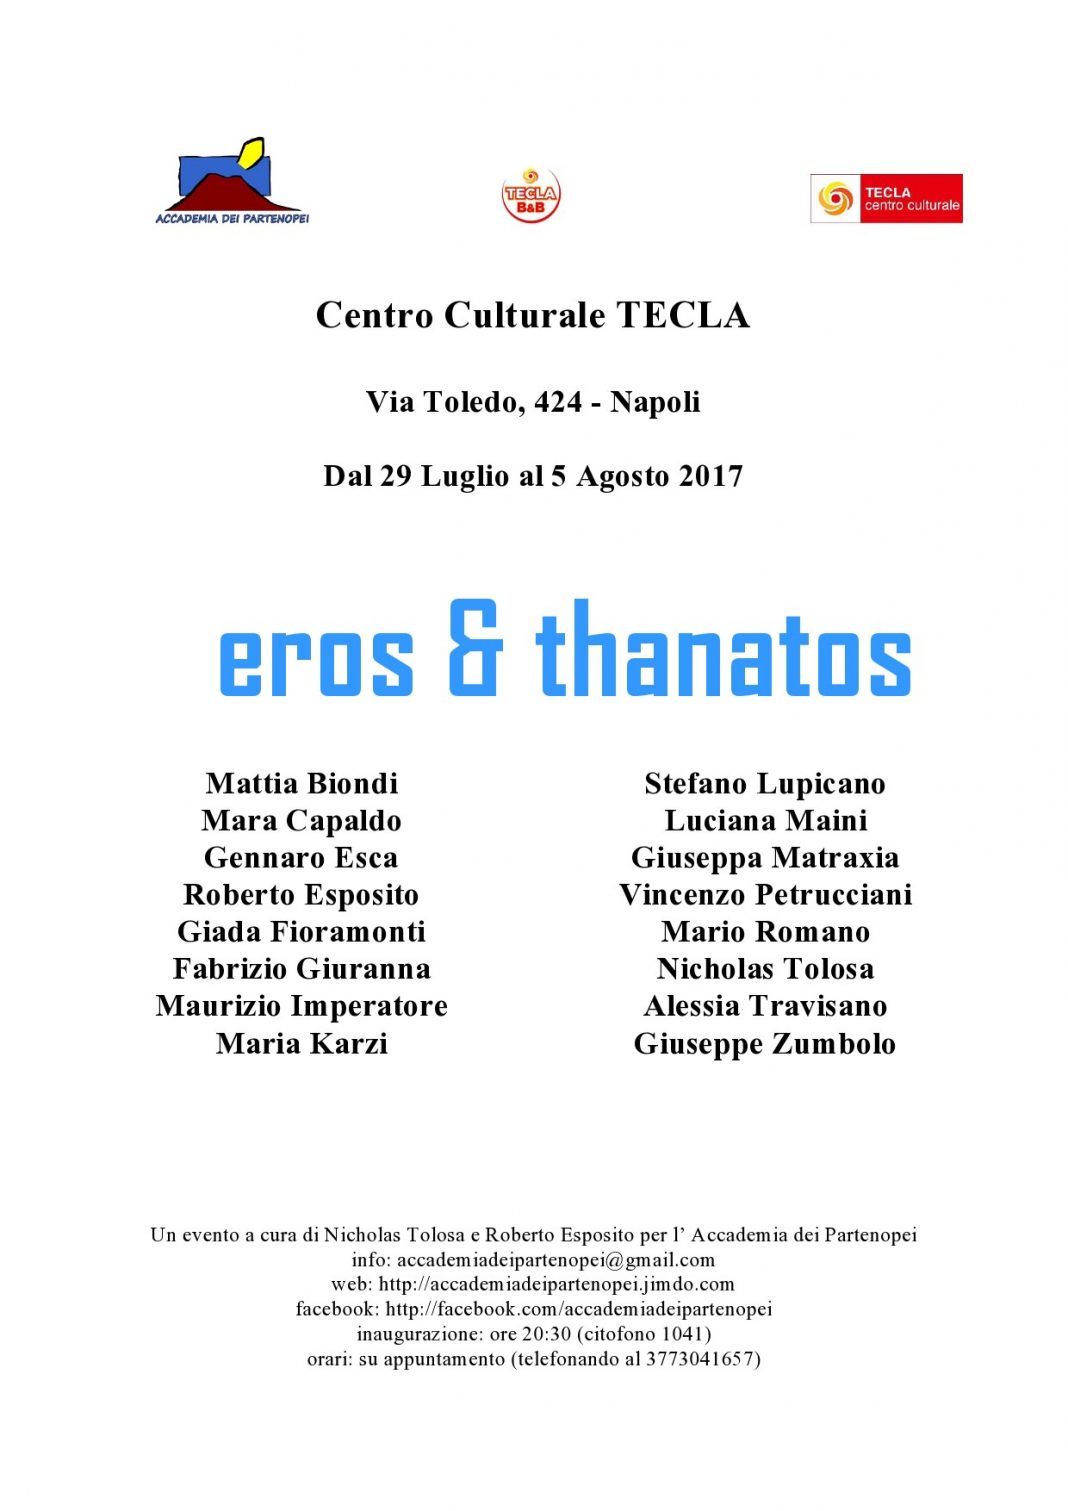 Eros & thanatos – II edizionehttps://www.exibart.com/repository/media/eventi/2017/07/eros-038-thanatos-8211-ii-edizione-1068x1511.jpg